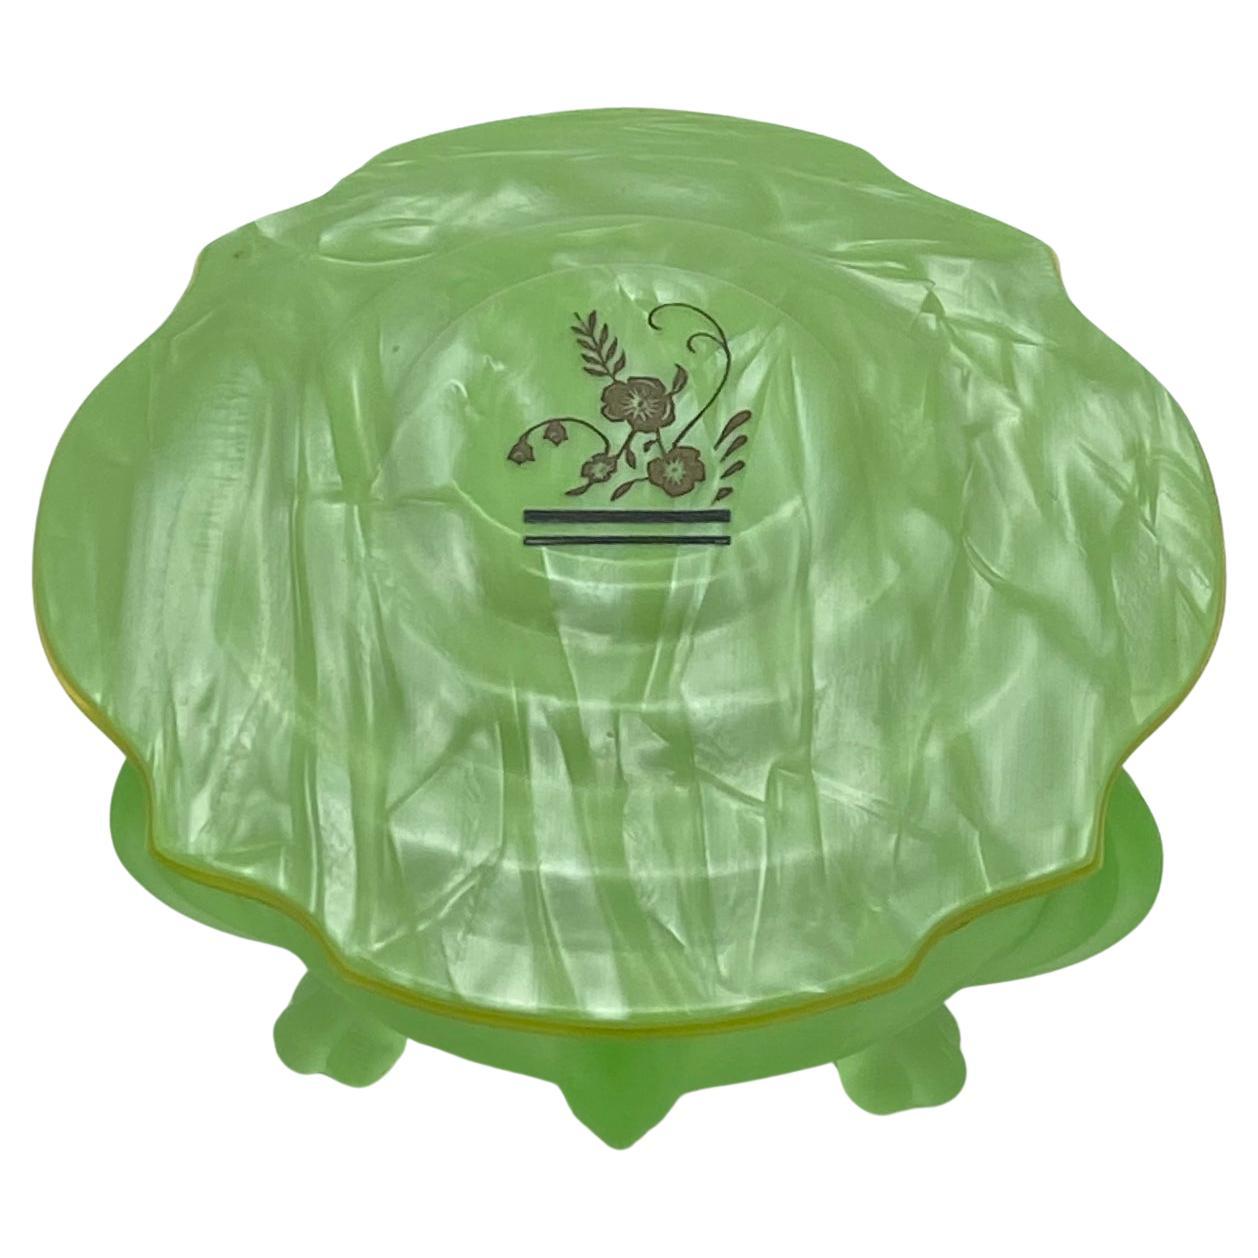 Il s'agit d'une boîte à poudre pour le bain de style Art déco. La boîte a un couvercle en celluloïd avec une partie supérieure marbrée en vert et une sous-couche de couleur ambre. Il a un corps en verre vert nourricier avec trois pieds. La touche